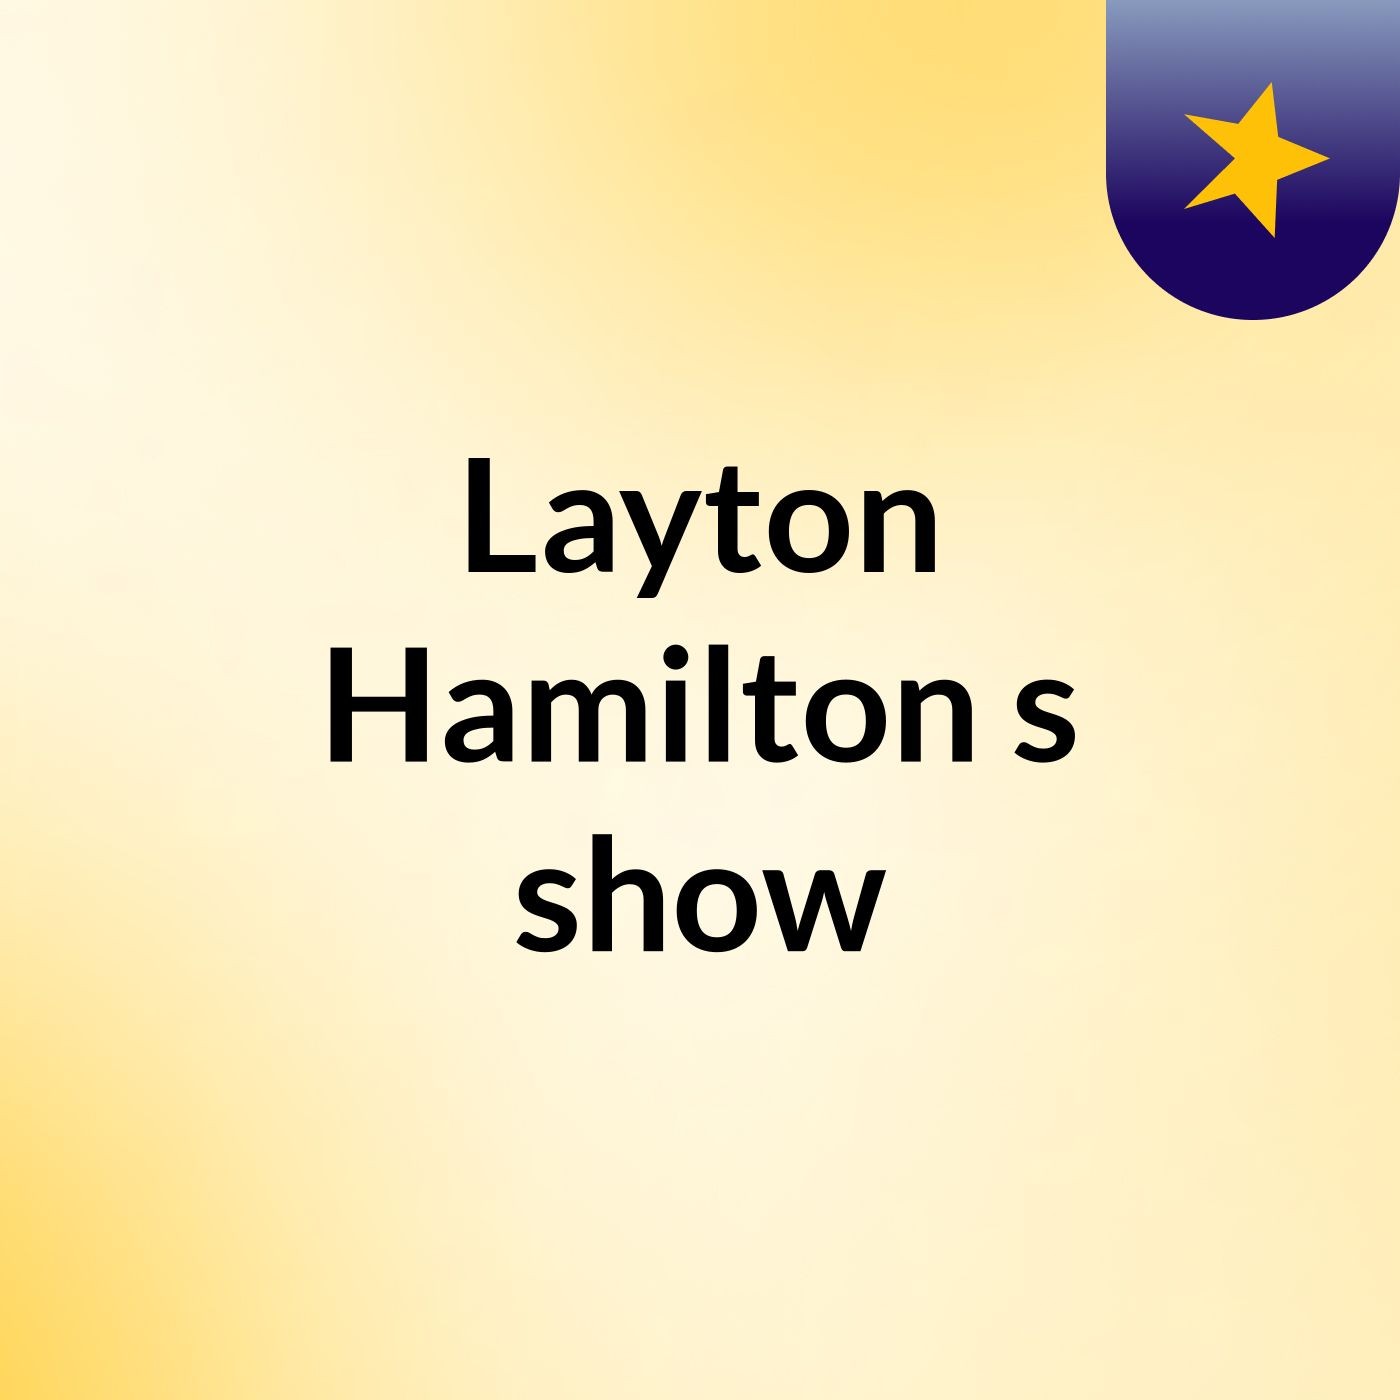 Episode 3 - Layton Hamilton's show